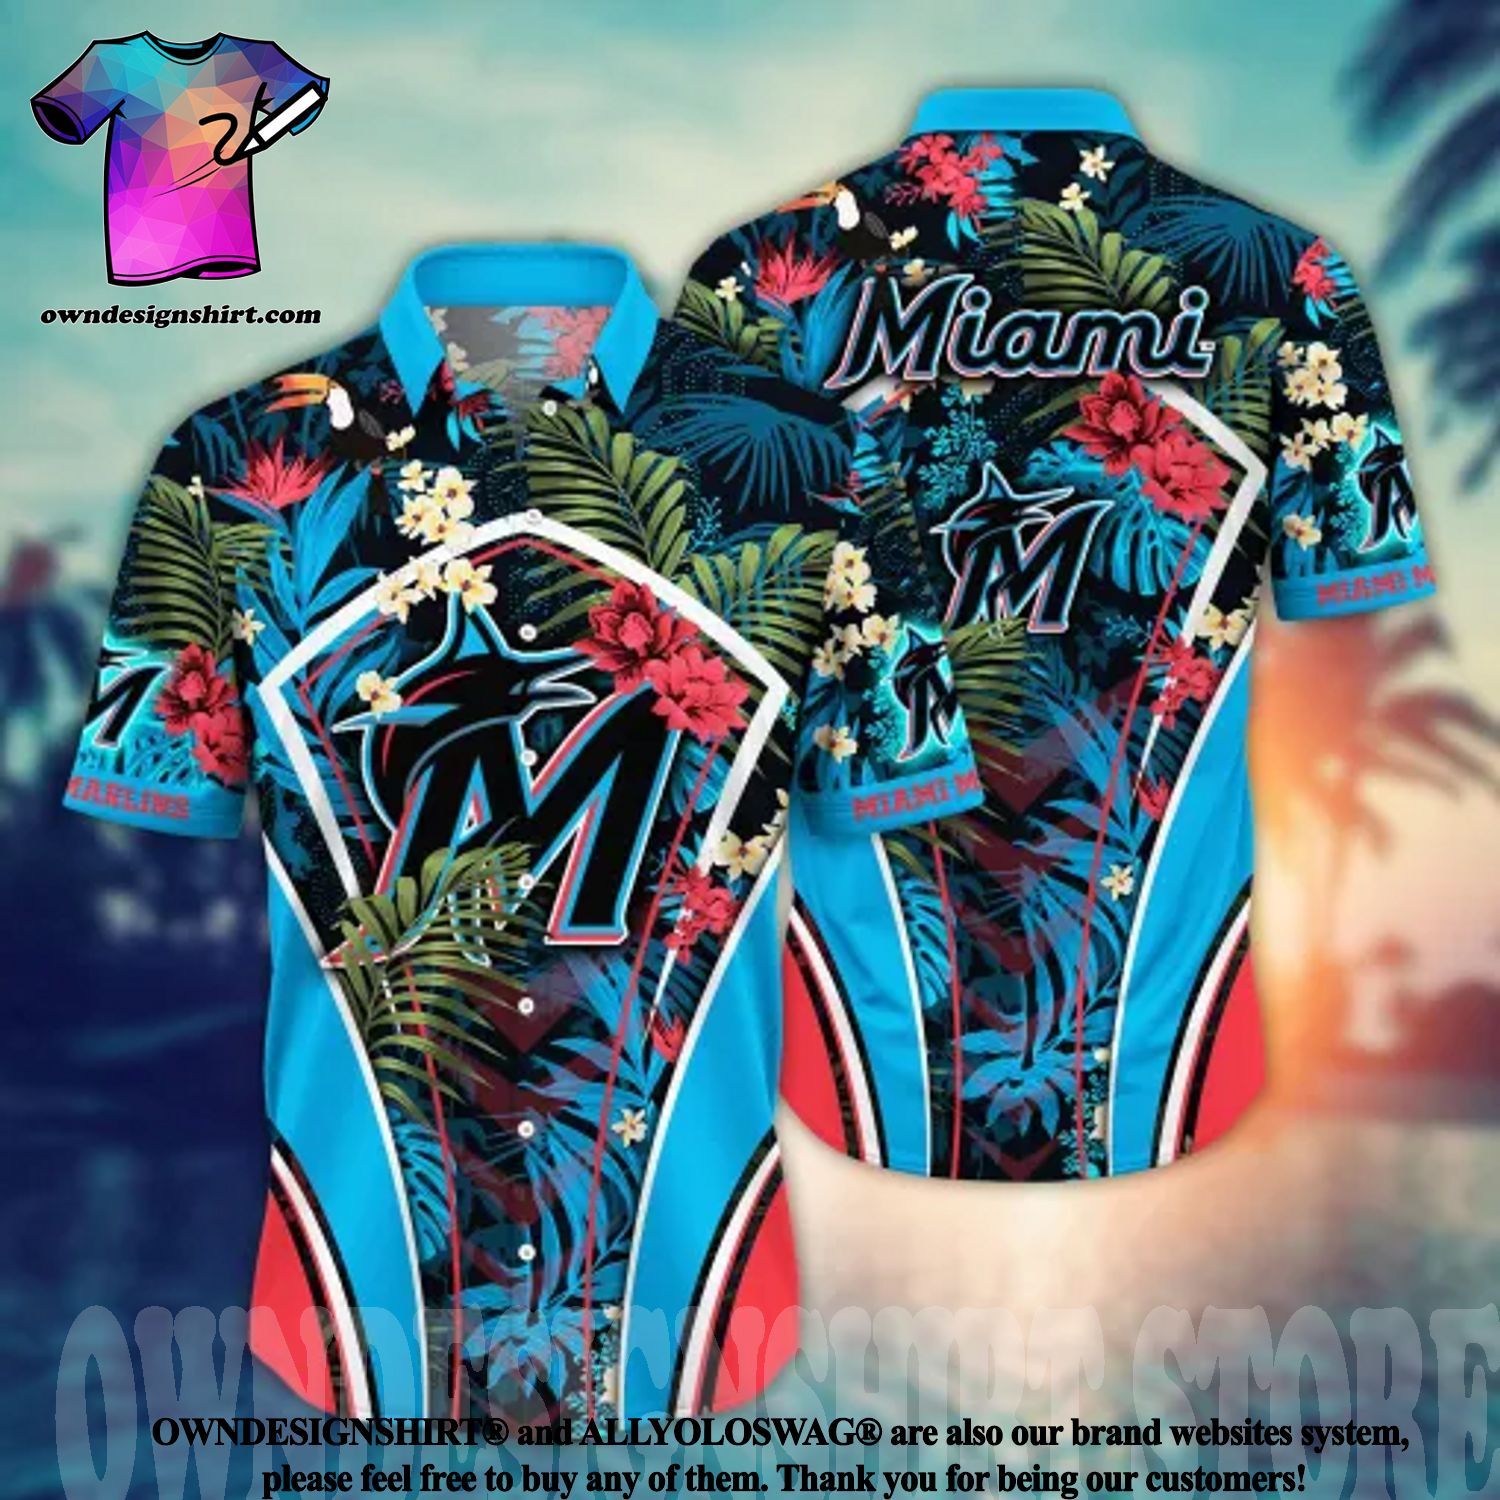 Miami Marlins MLB Hawaiian Shirt Custom Shorts Aloha Shirt - Trendy Aloha